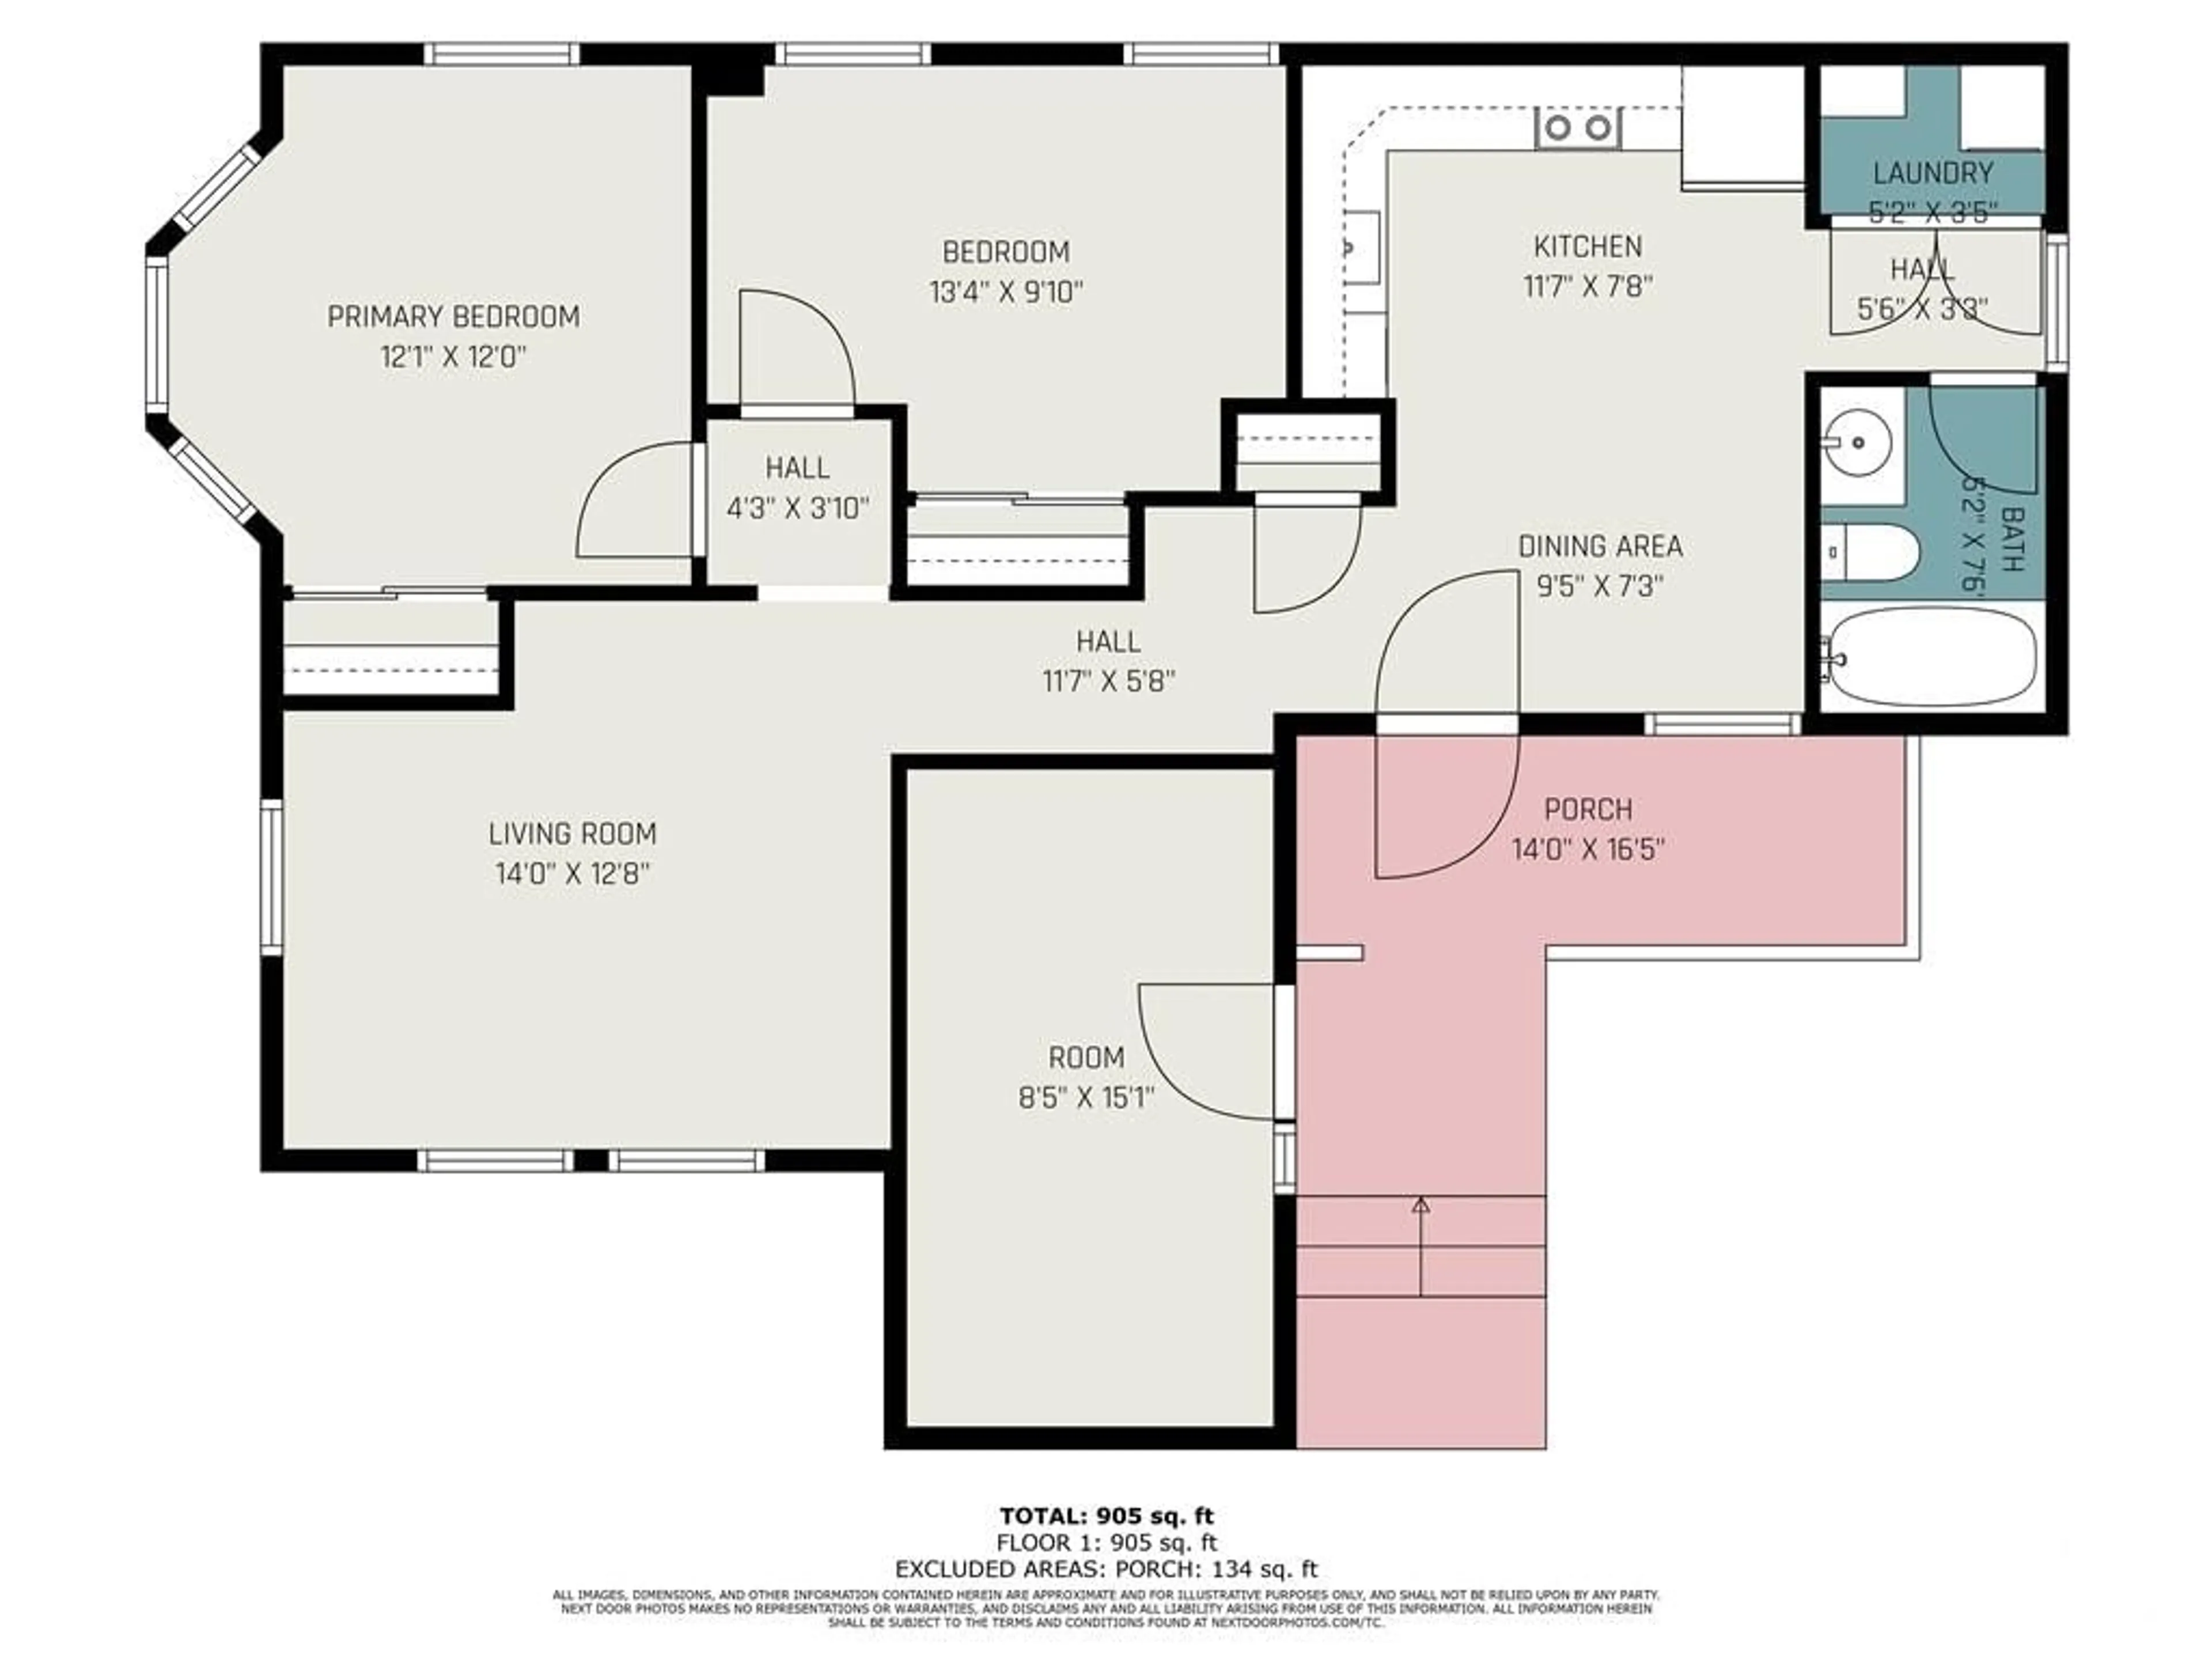 Floor plan for 14 CHARLES St, Arnprior Ontario K7S 1A7